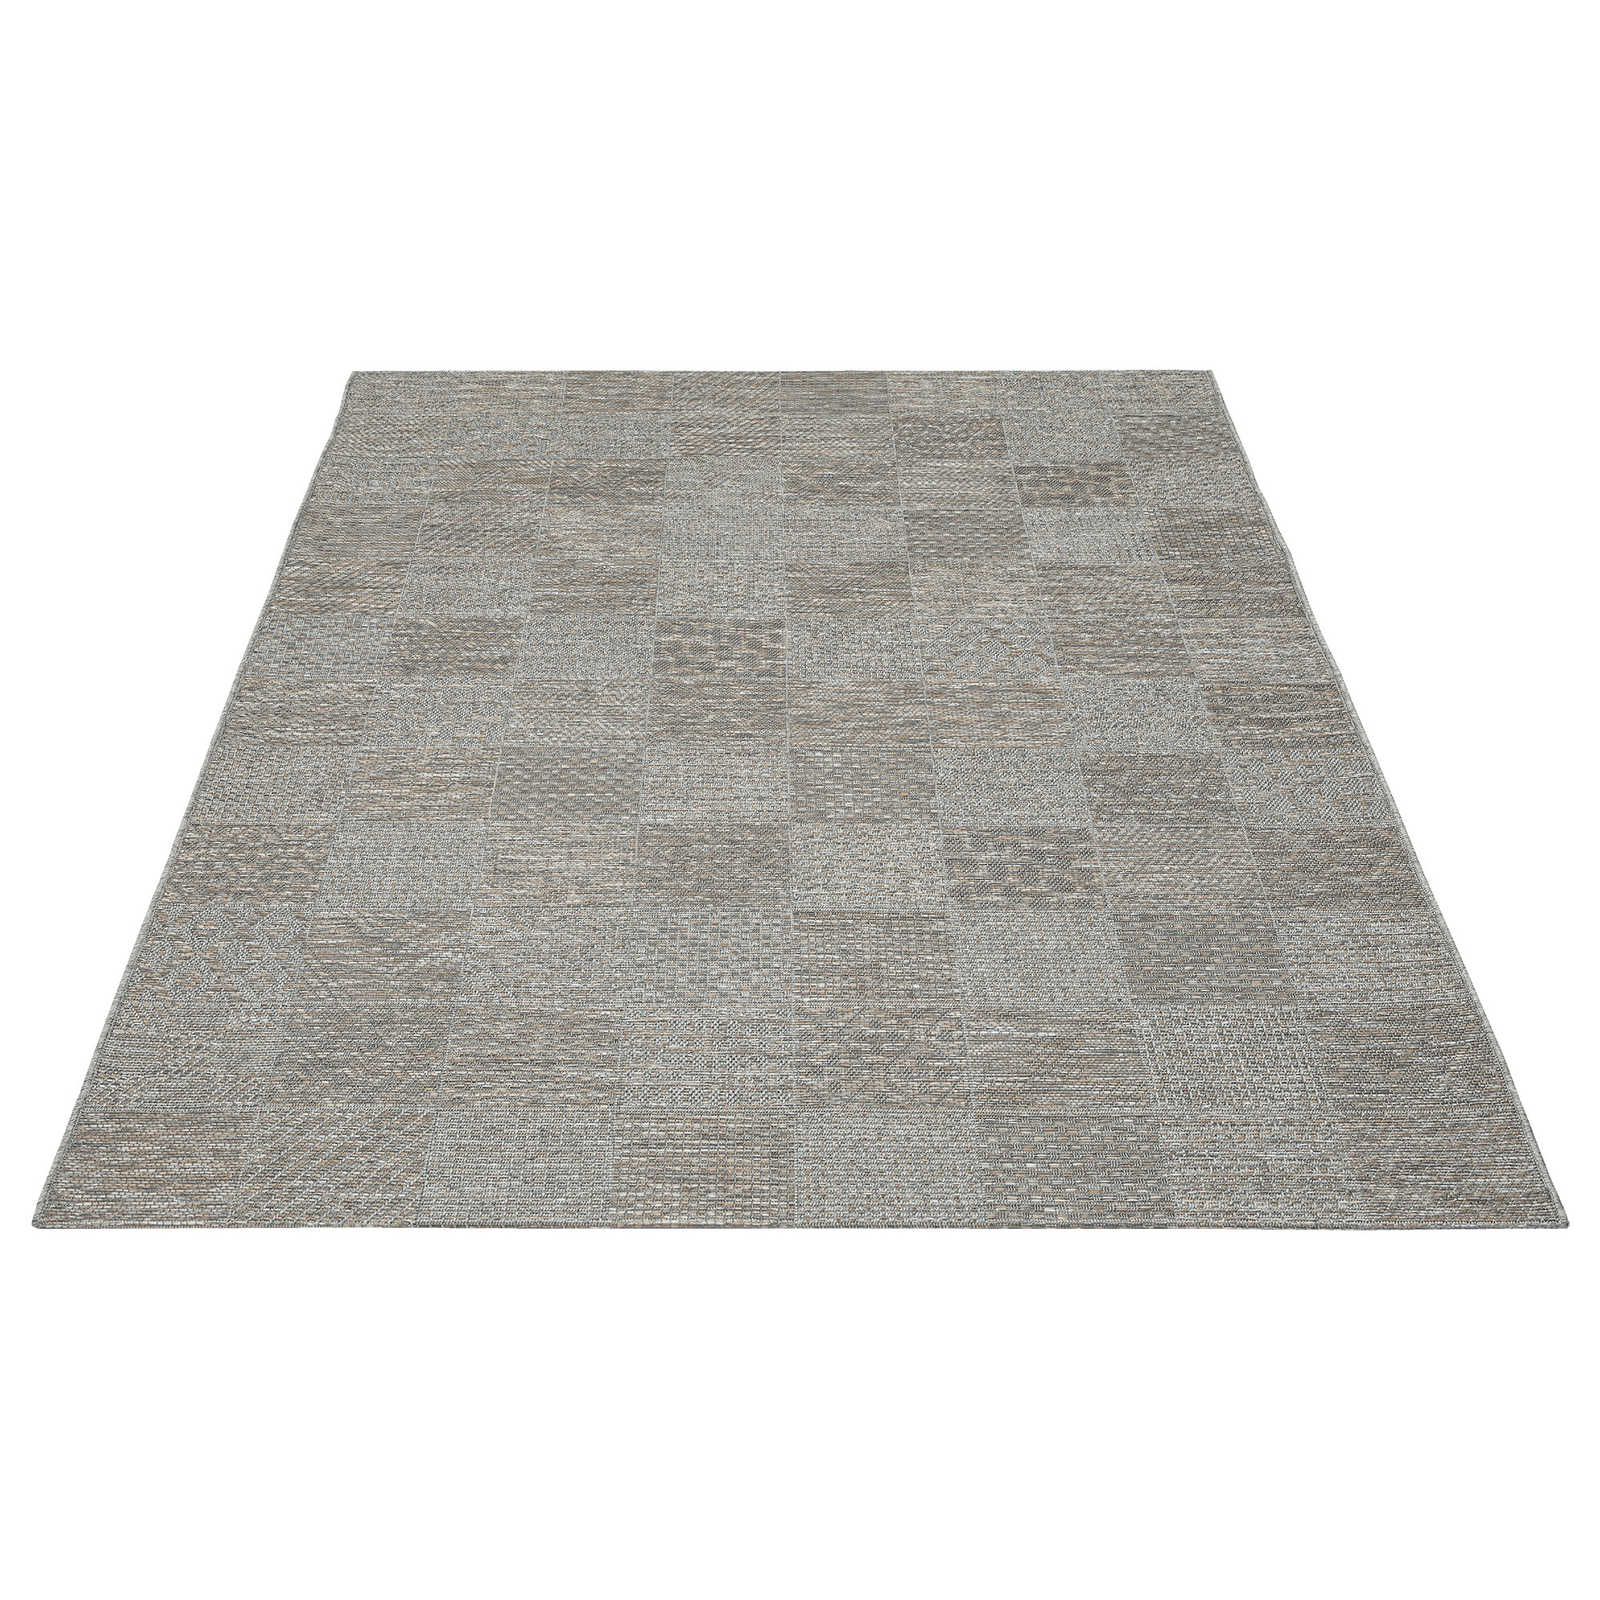 Schlichter Outdoor Teppich in Greige – 280 x 200 cm
